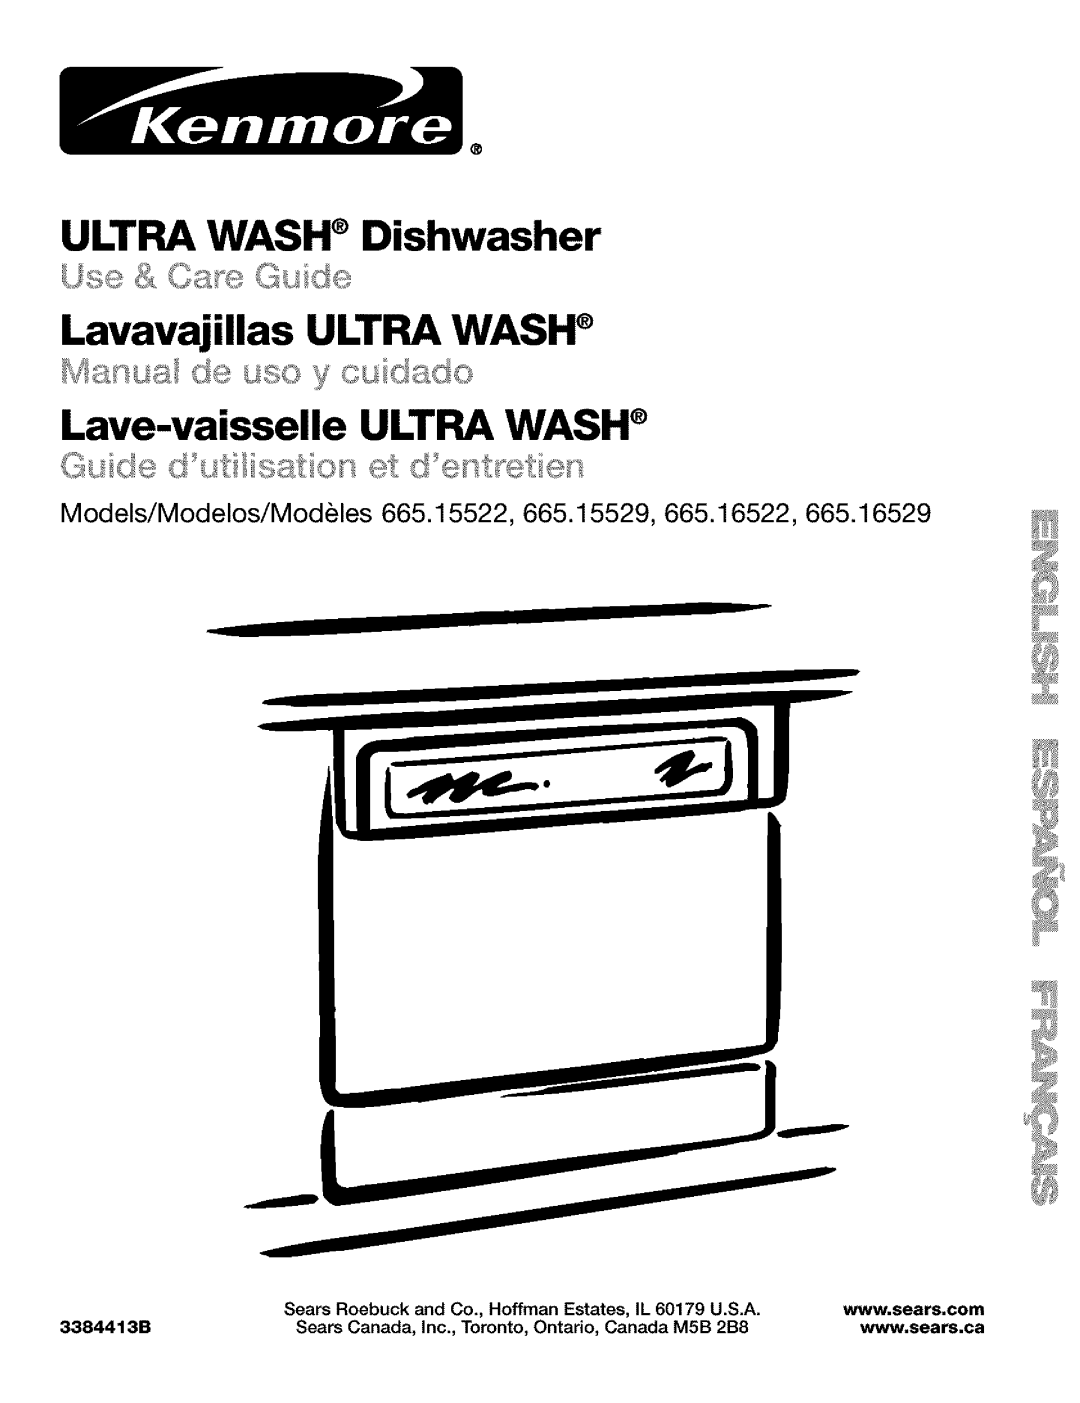 Kenmore 665.15522 manual ULTRA WASH Dishwasher Lavavajillas ULTRA WASH, Lave-vaisselleULTRA WASH, Manual de u._o y cu_d_do 